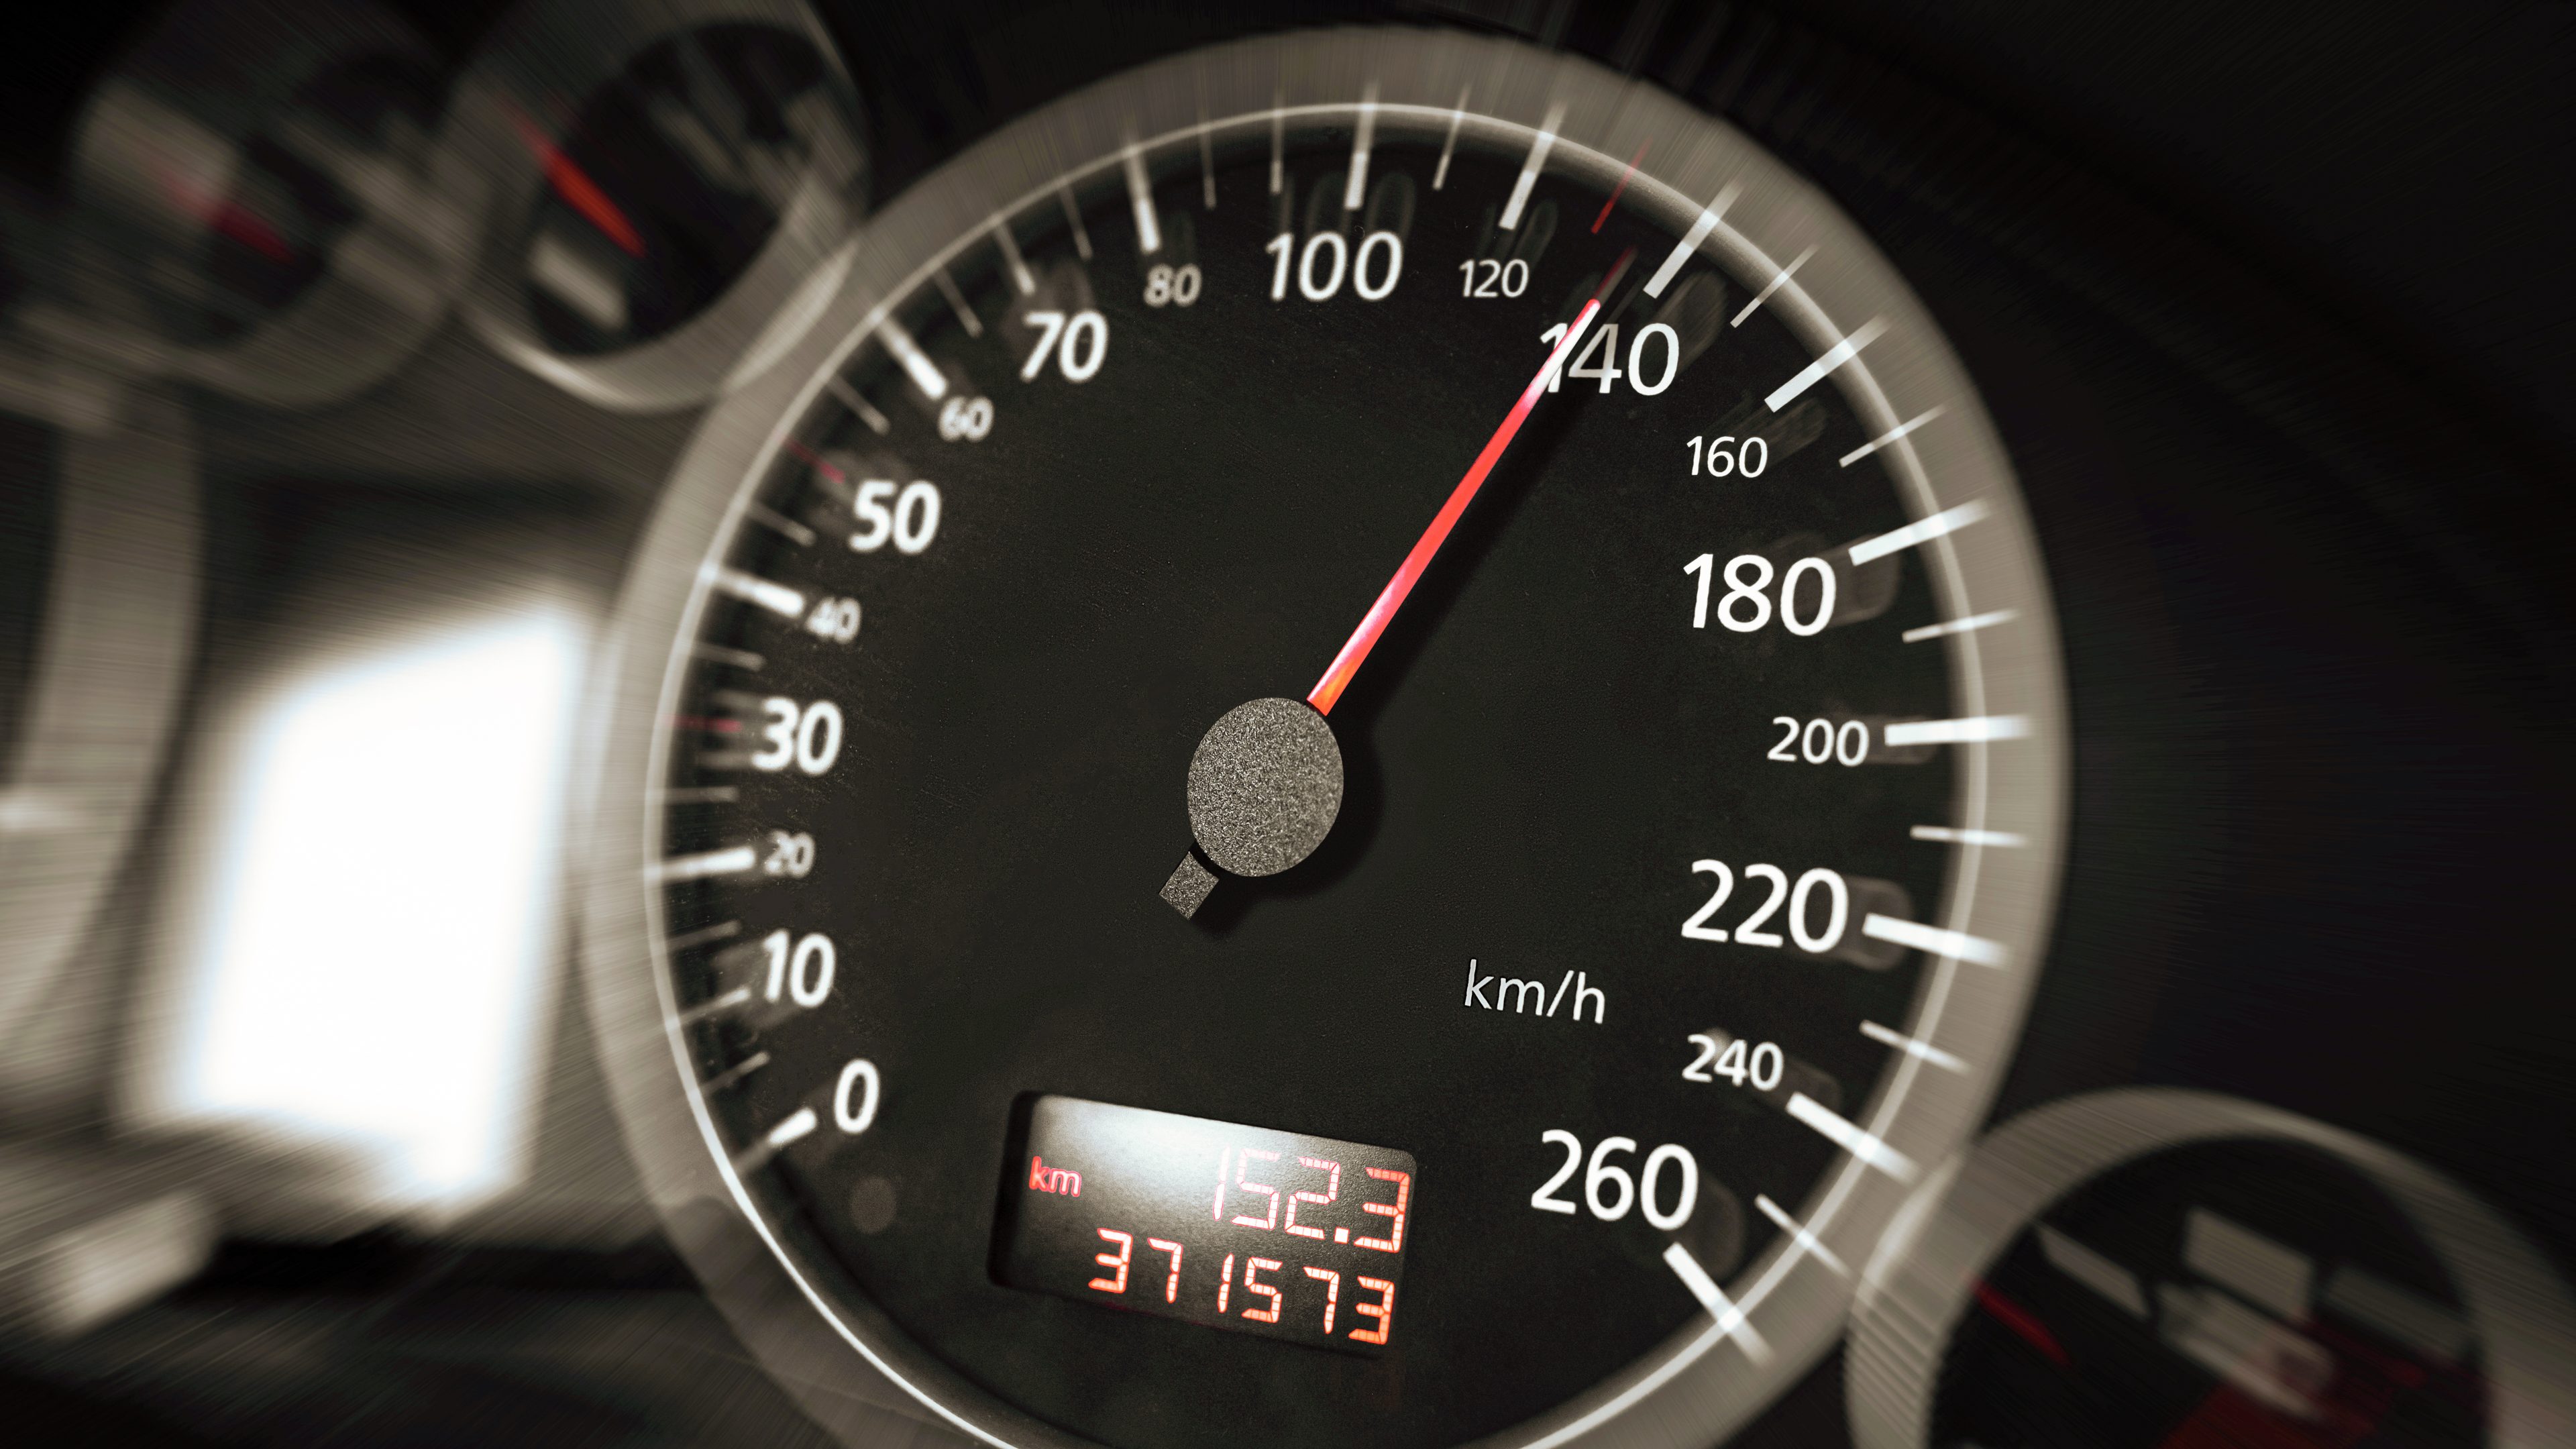 Compteur vitesse moto gps - Comparez les prix et achetez sur